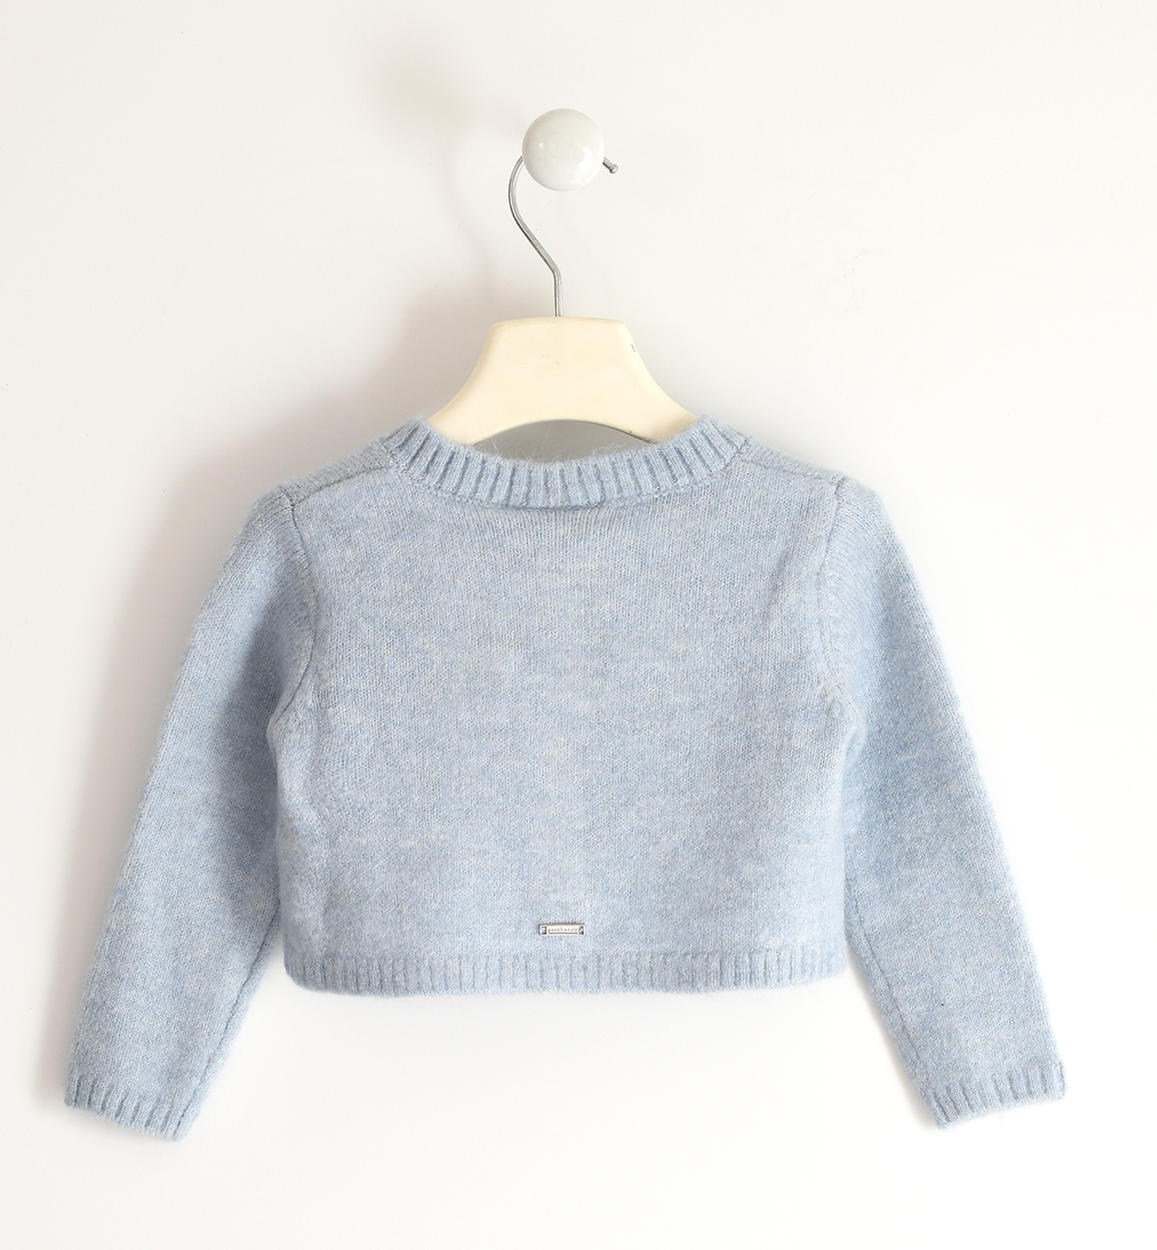 Abbigliamento per bambini , Cardigan bambina in tricot stretch da 12 mesi a 8 anni Sarabanda 05240 - BabyBimbo 0-16, abbigliamento bambini